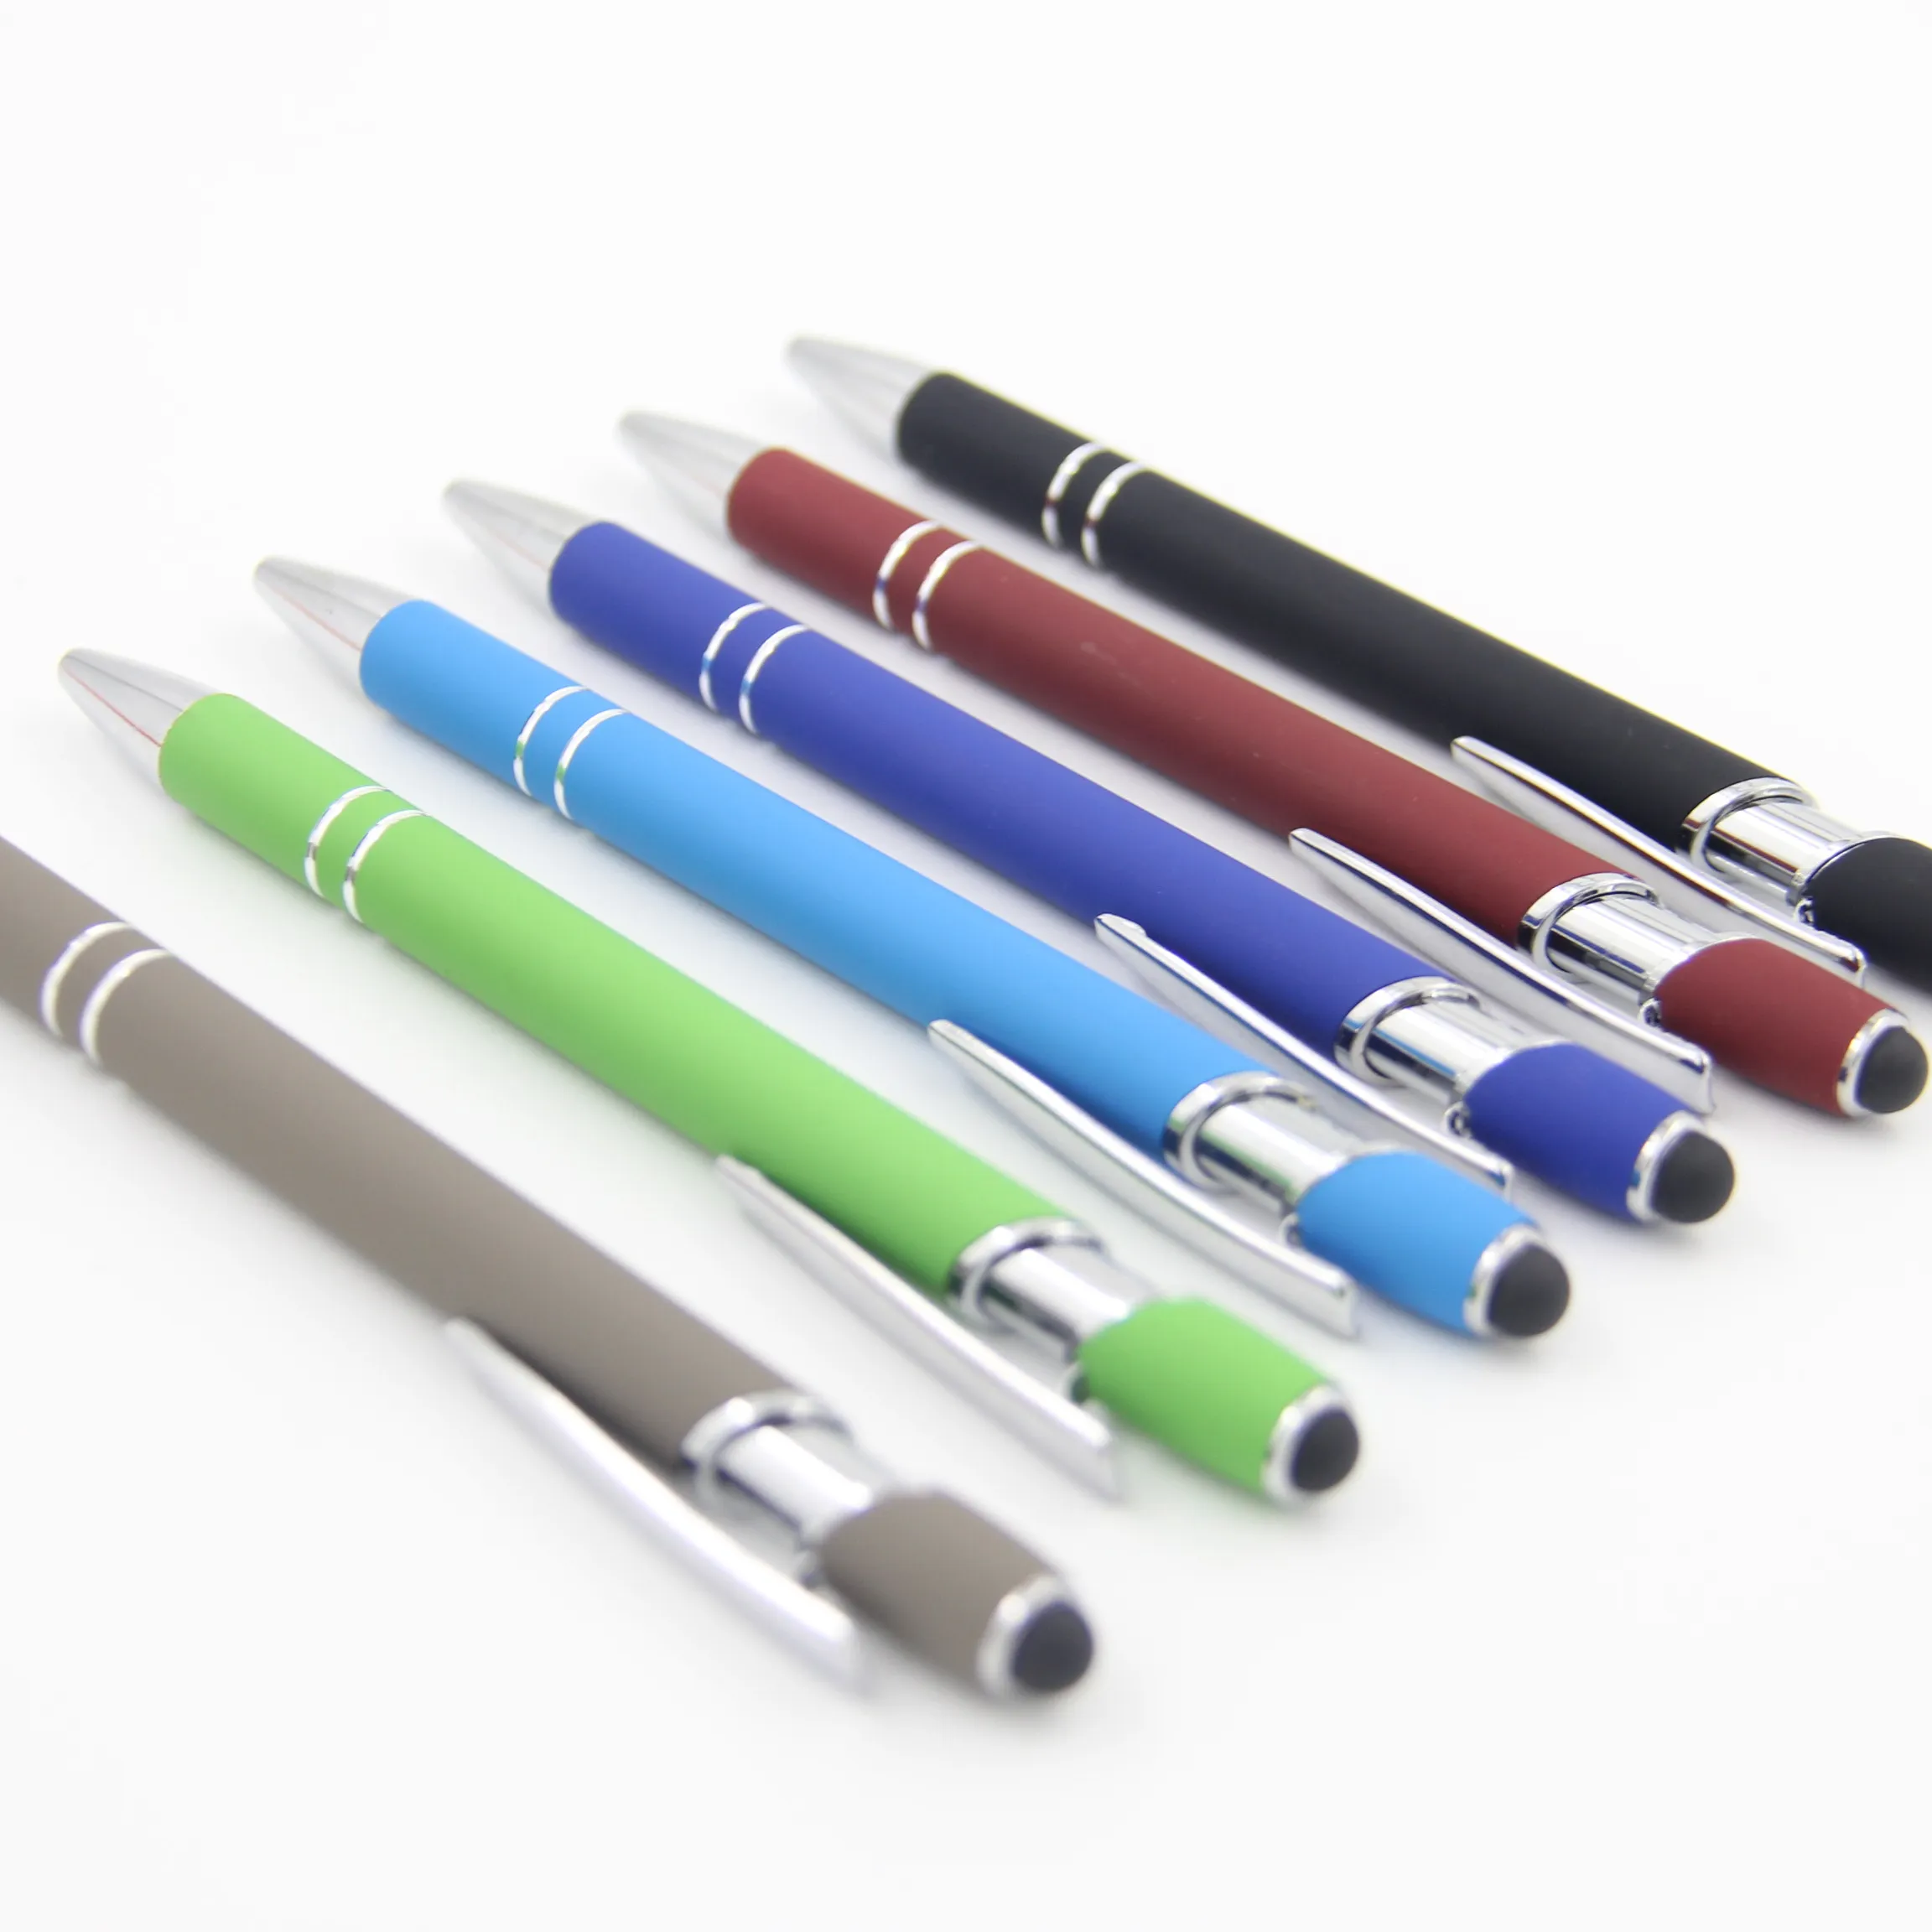 ייצור מקצועי זול פרסום גומי ידית לולאה Stylus עט כדורי חדש